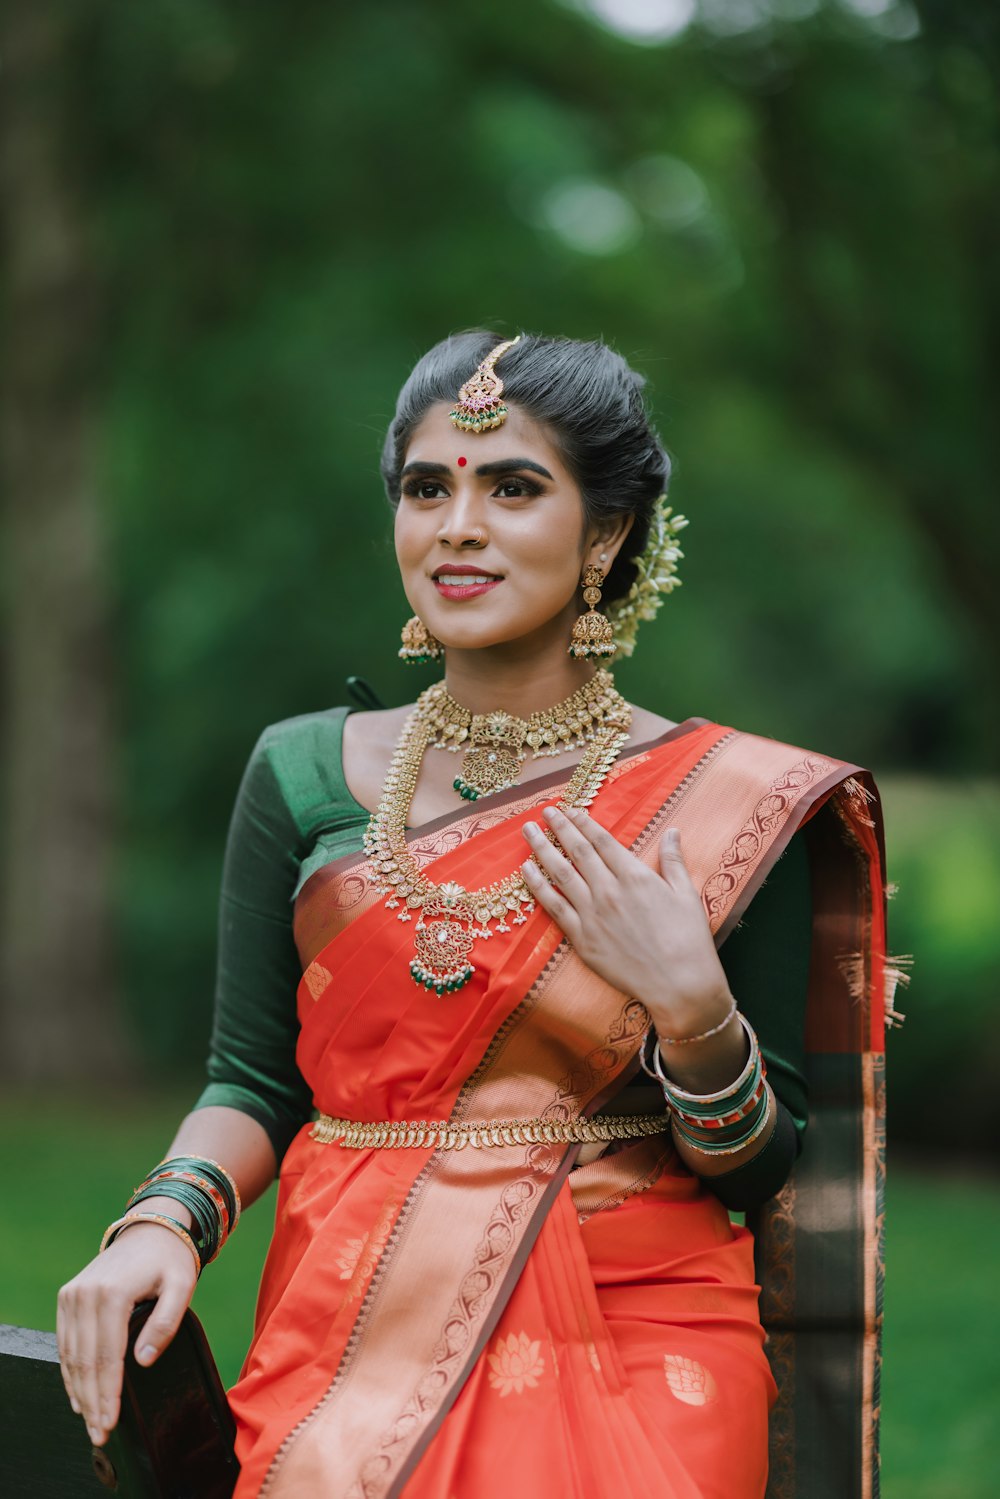 a woman in an orange and green sari